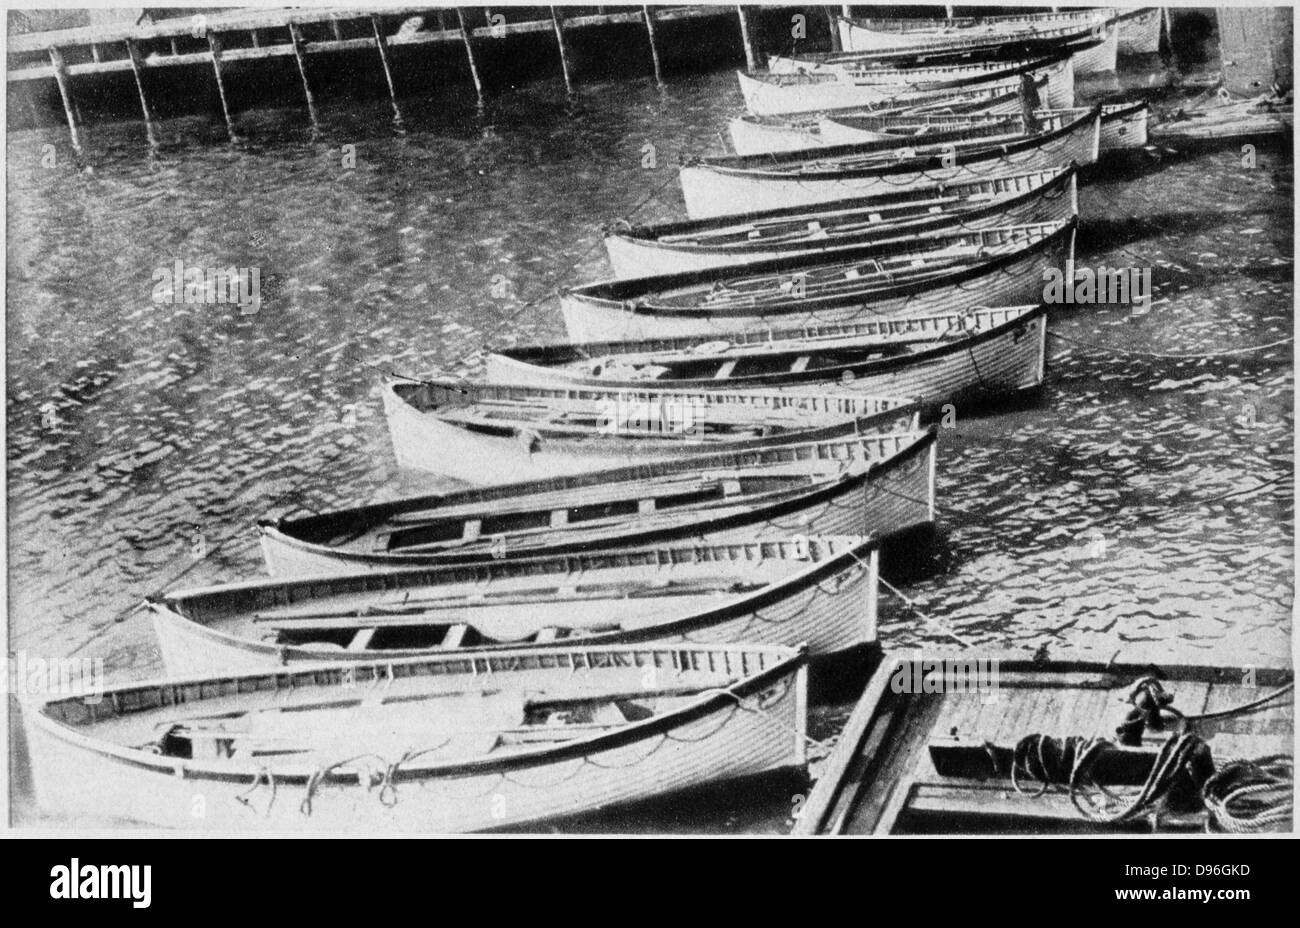 Der Verlust der SS Titanic, 14. April 1912: Die rettungsboote. All das war der größte Schiff der Welt Links - die Rettungsboote, dass die meisten der 705 Überlebenden durchgeführt. Durch die White Star Line betrieben, SS Titanic Struck ein Eisberg im dichten Nebel vor Neufundland. Stockfoto